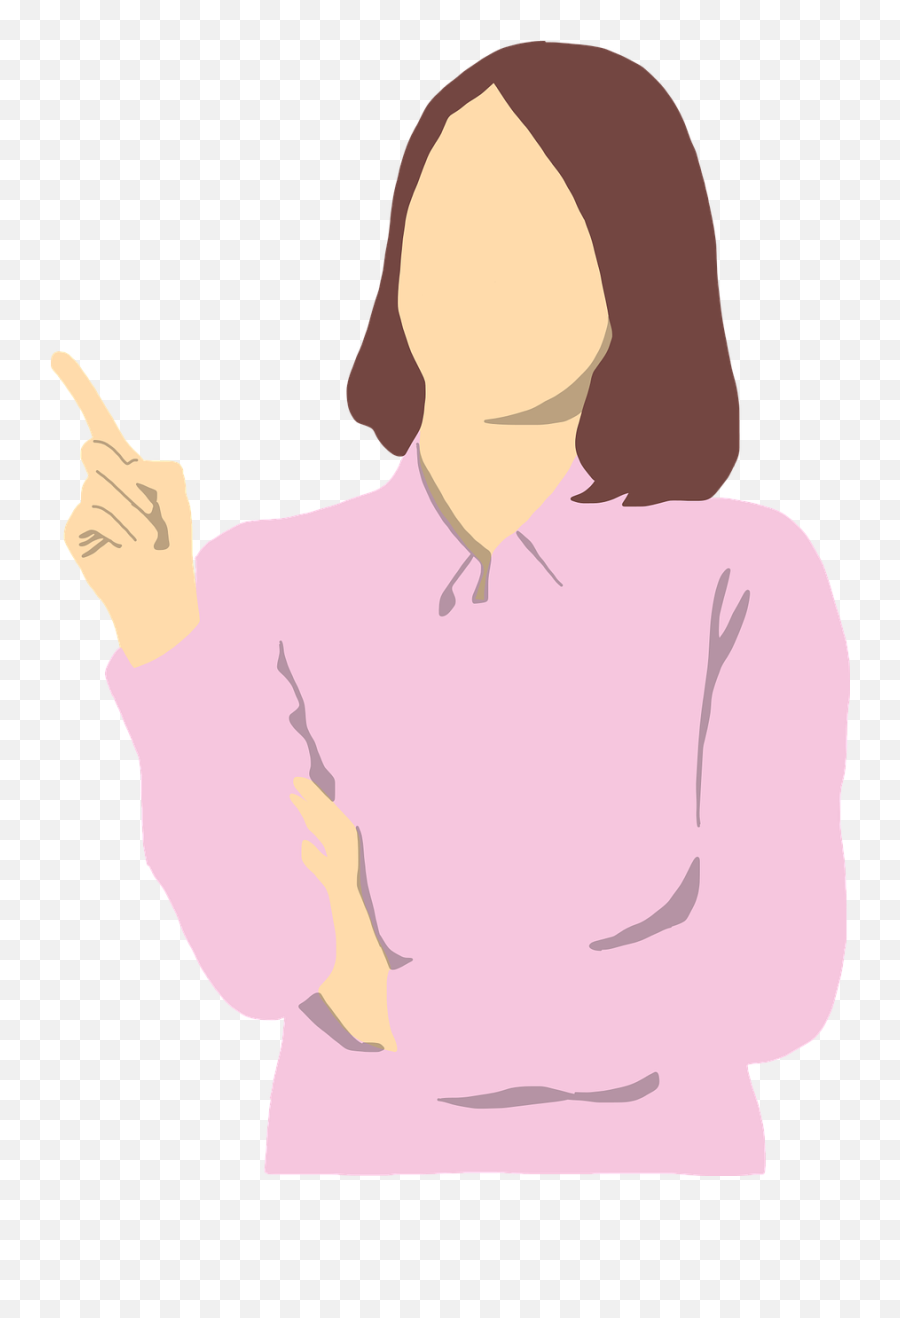 Woman Girl Pointing - Free Vector Graphic On Pixabay Gambar Orang Menunjuk Png,Person Thinking Png